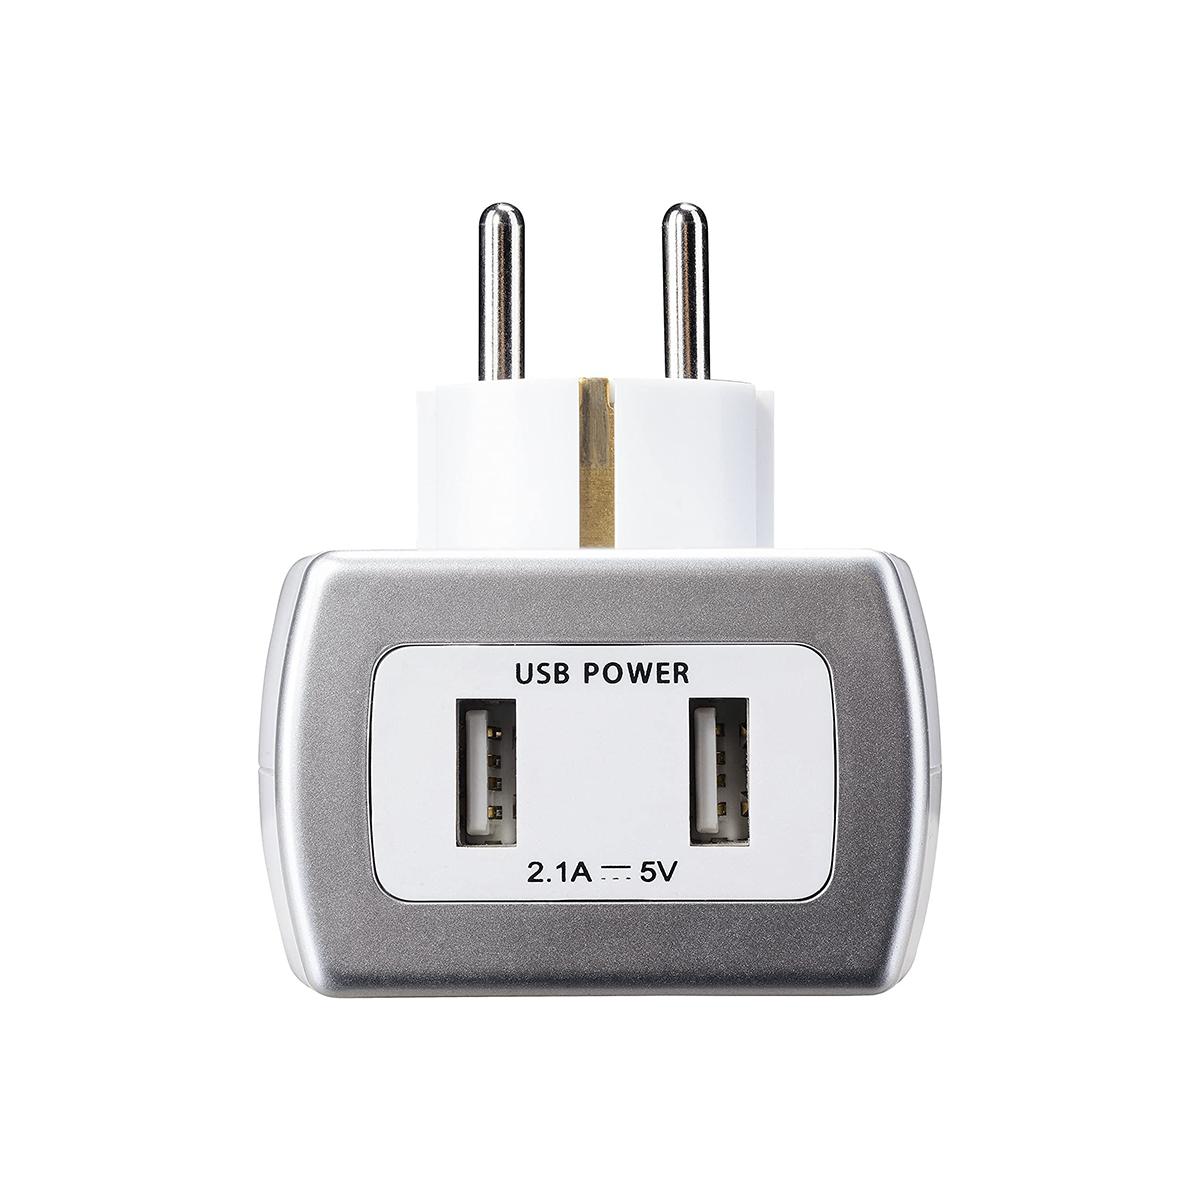 Masterplug Aufsatzsteckdose EU weiß / 2x USB 5V 2.1A / Überspannungsschutz Blitzschutz 